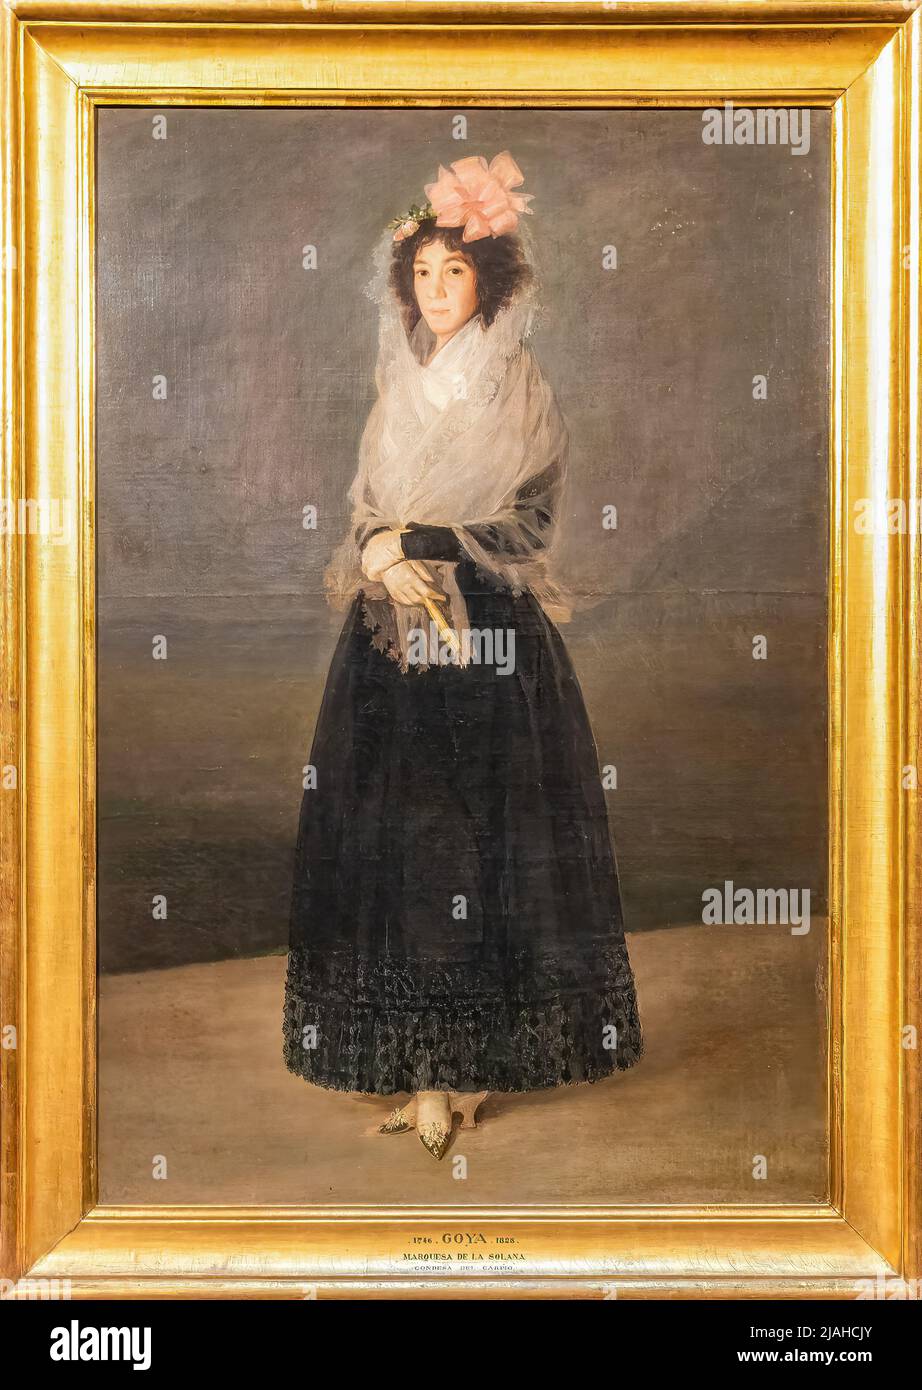 París, Francia - 18 de marzo de 2018: Retrato de la condesa del Carpio, marquesa del Solana, es un retrato completo de Francisco de Goya en 1795 Foto de stock